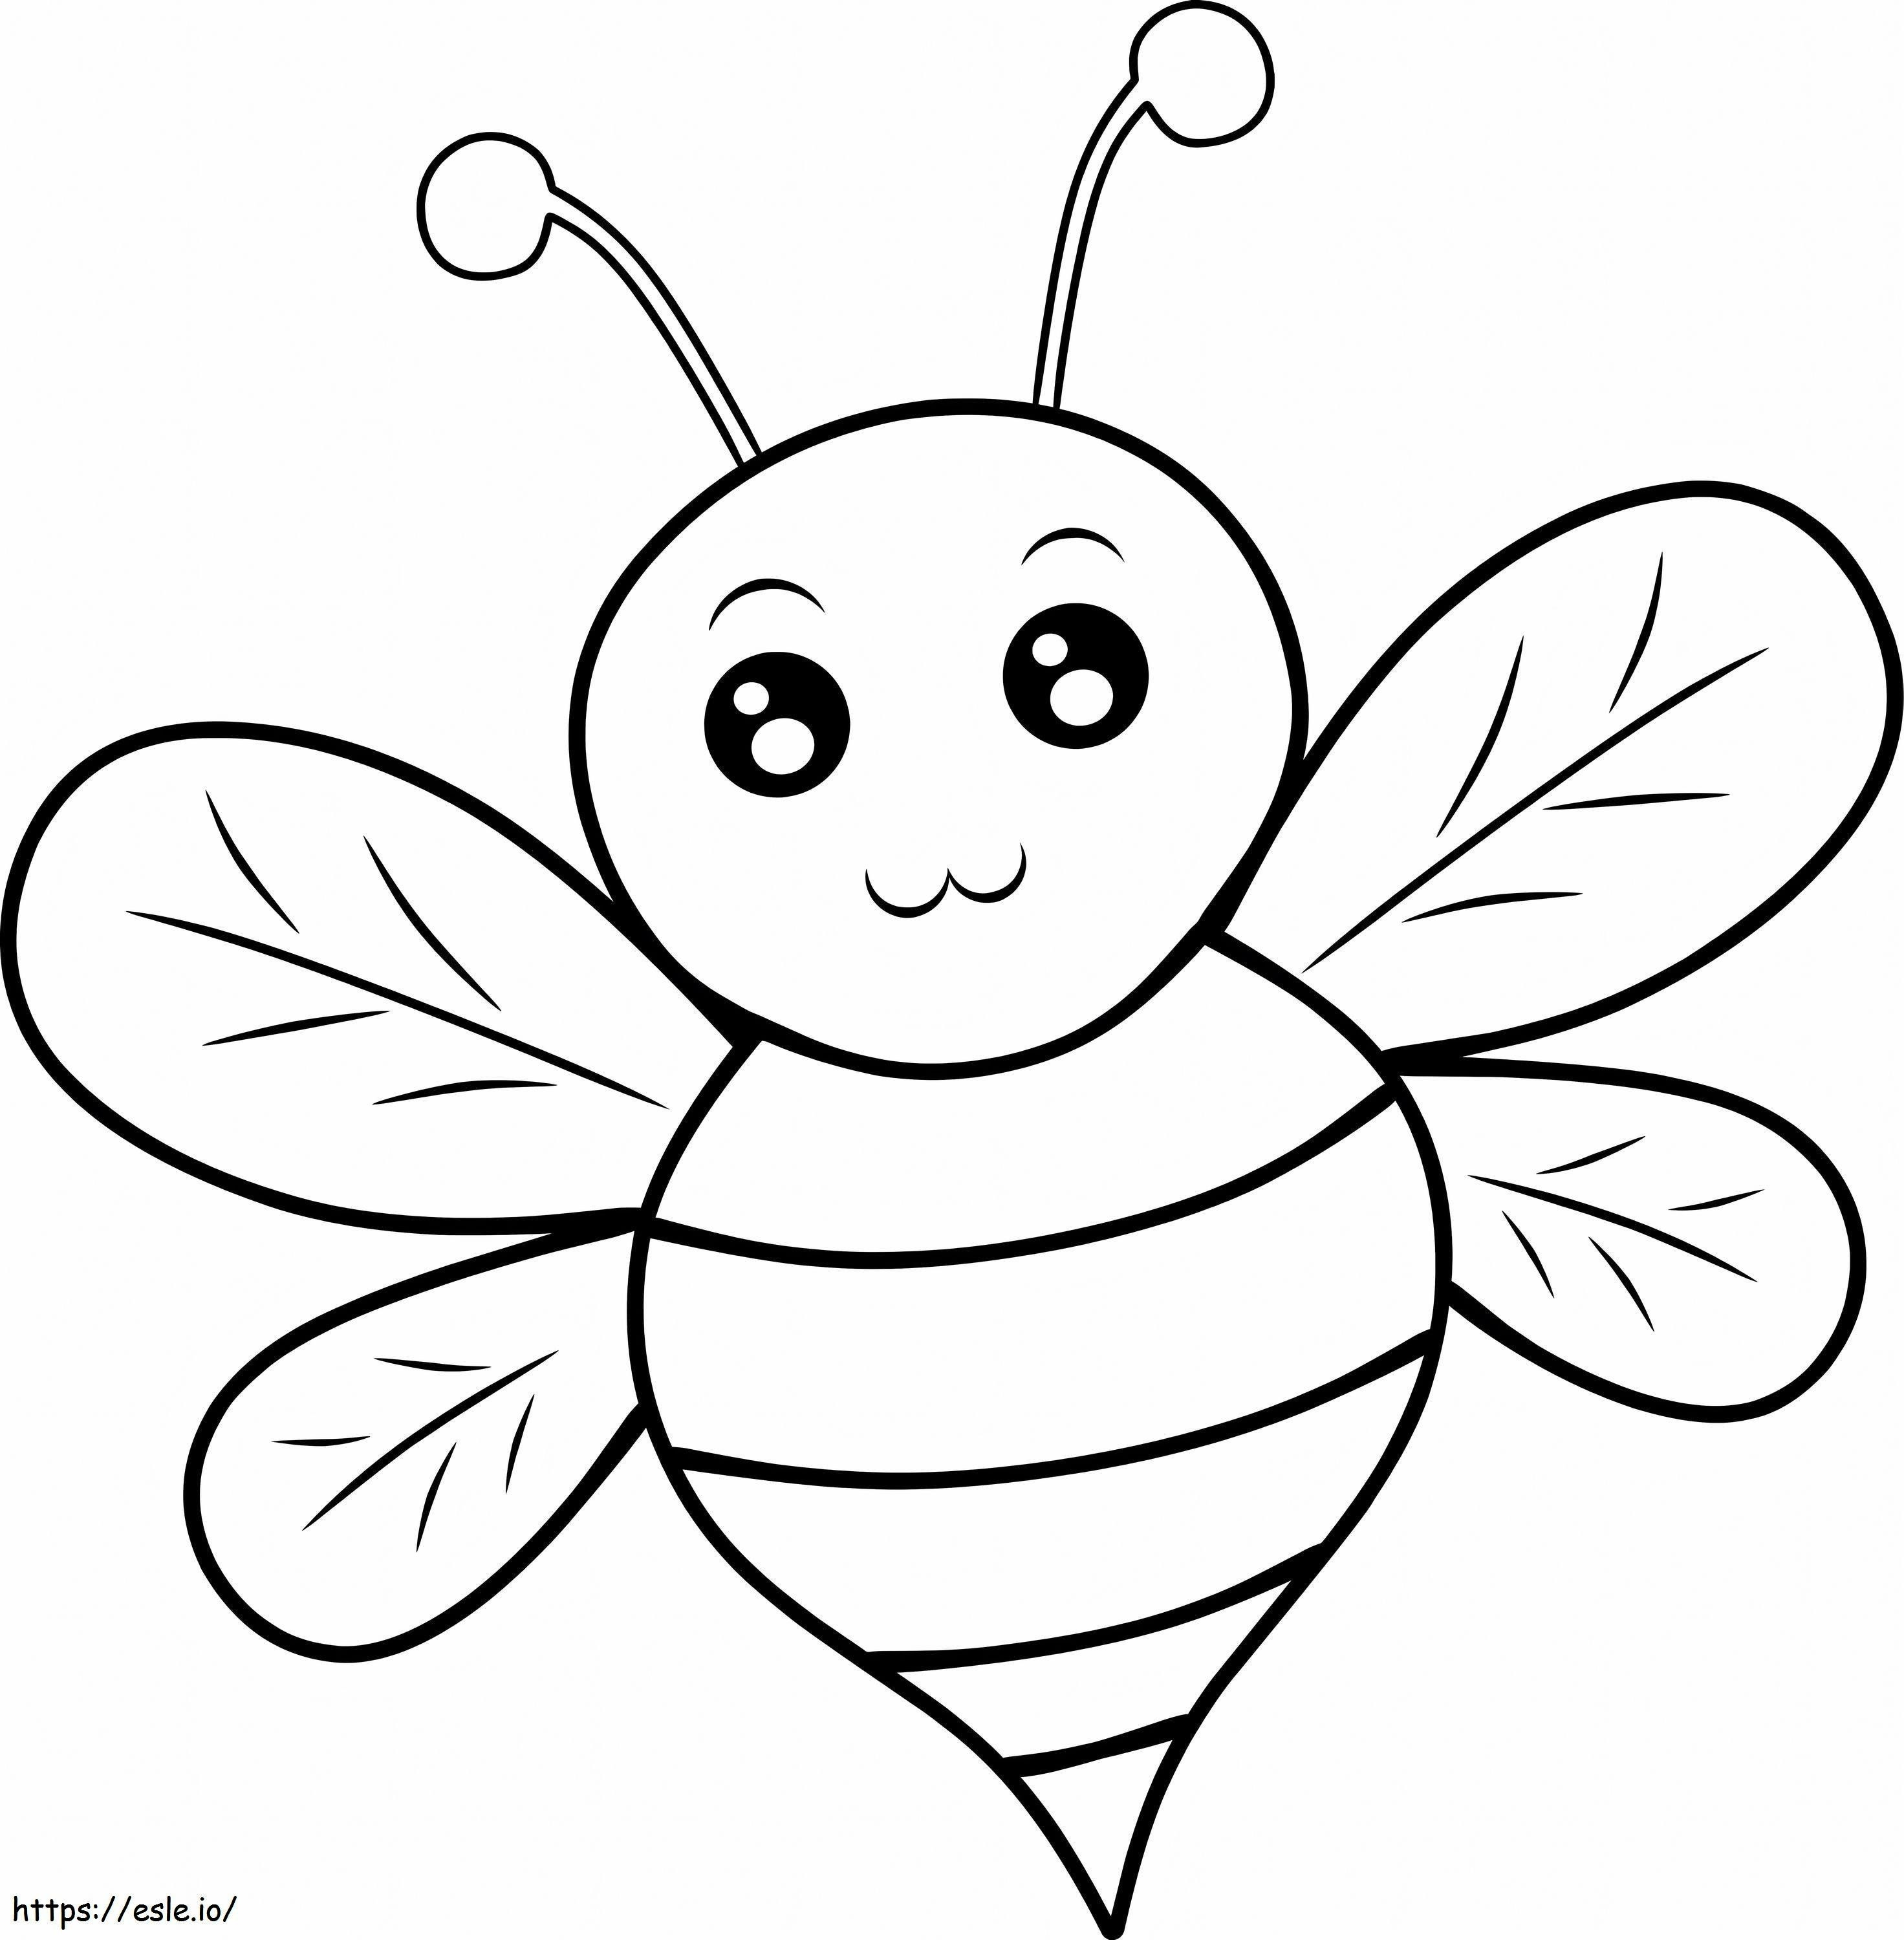 Einfache Biene ausmalbilder